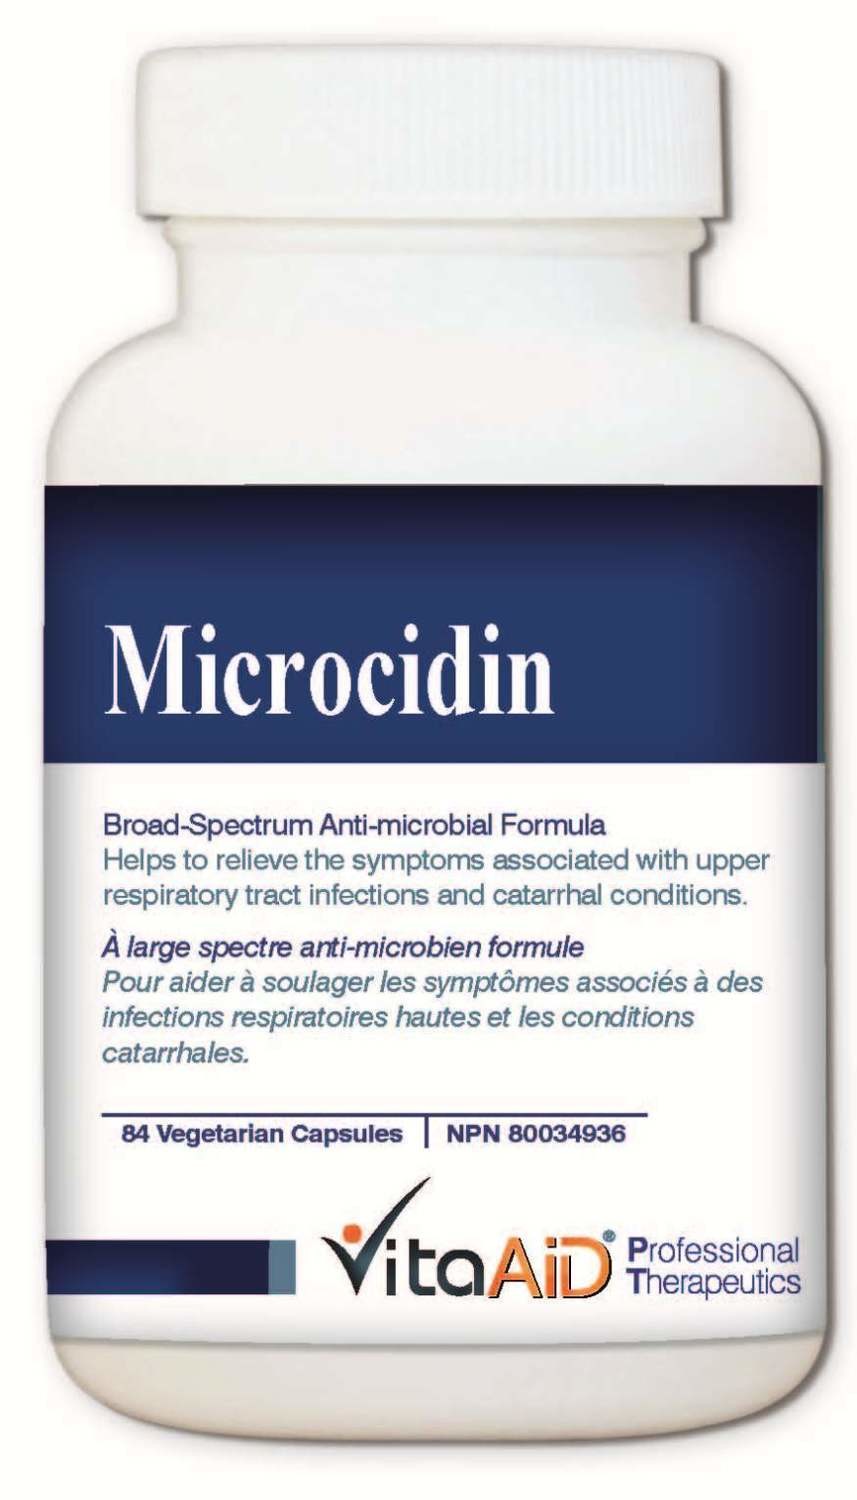 Microcidin (Anti-Microbial) by Vita Aid